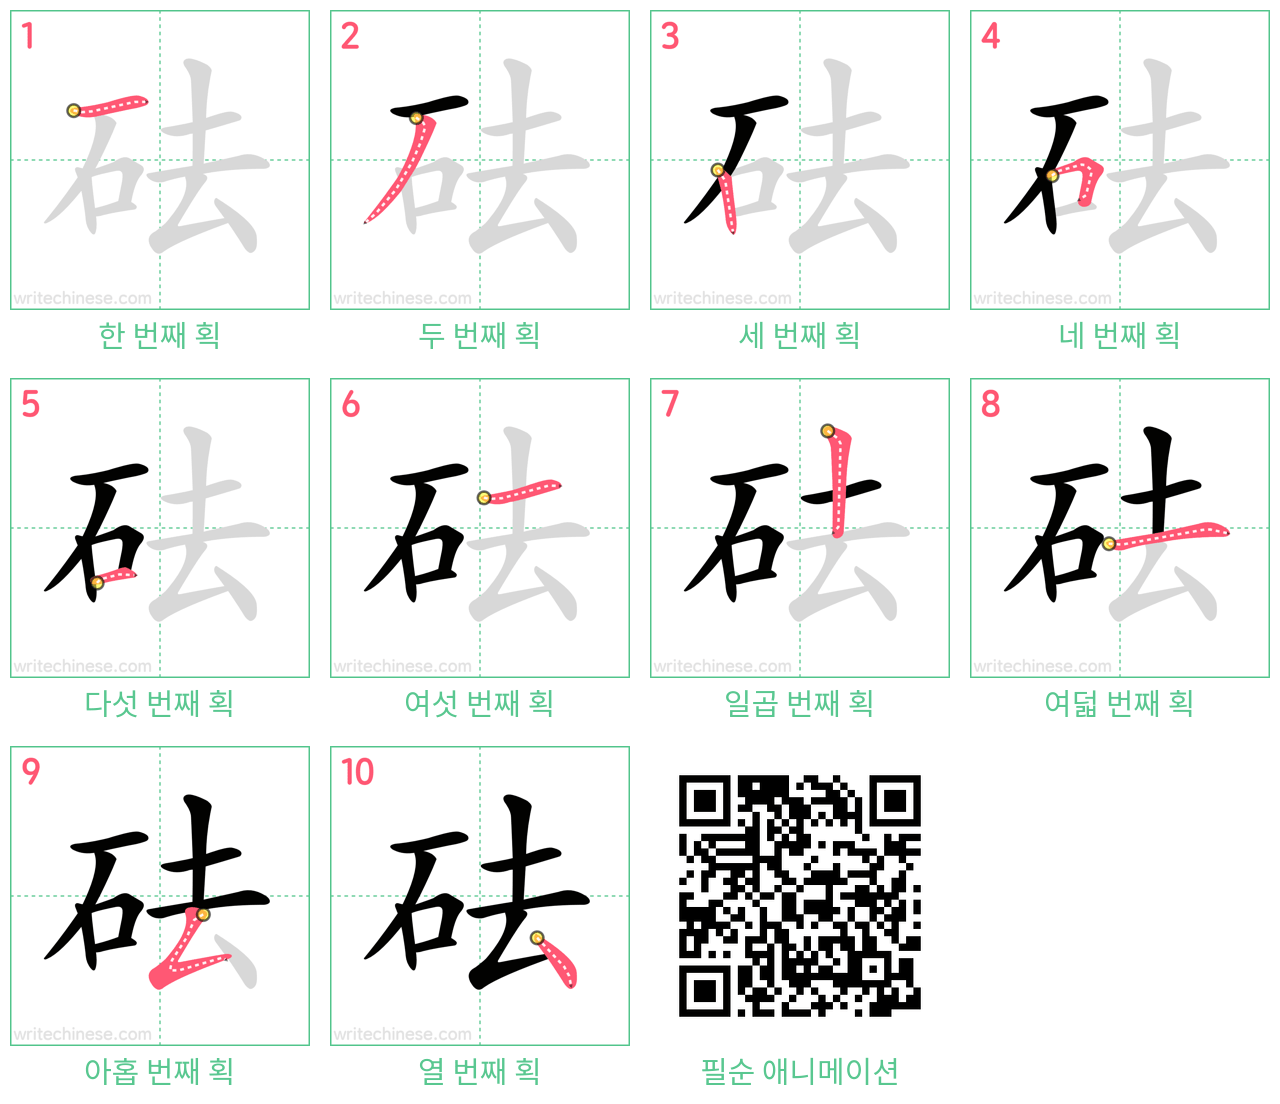 砝 step-by-step stroke order diagrams